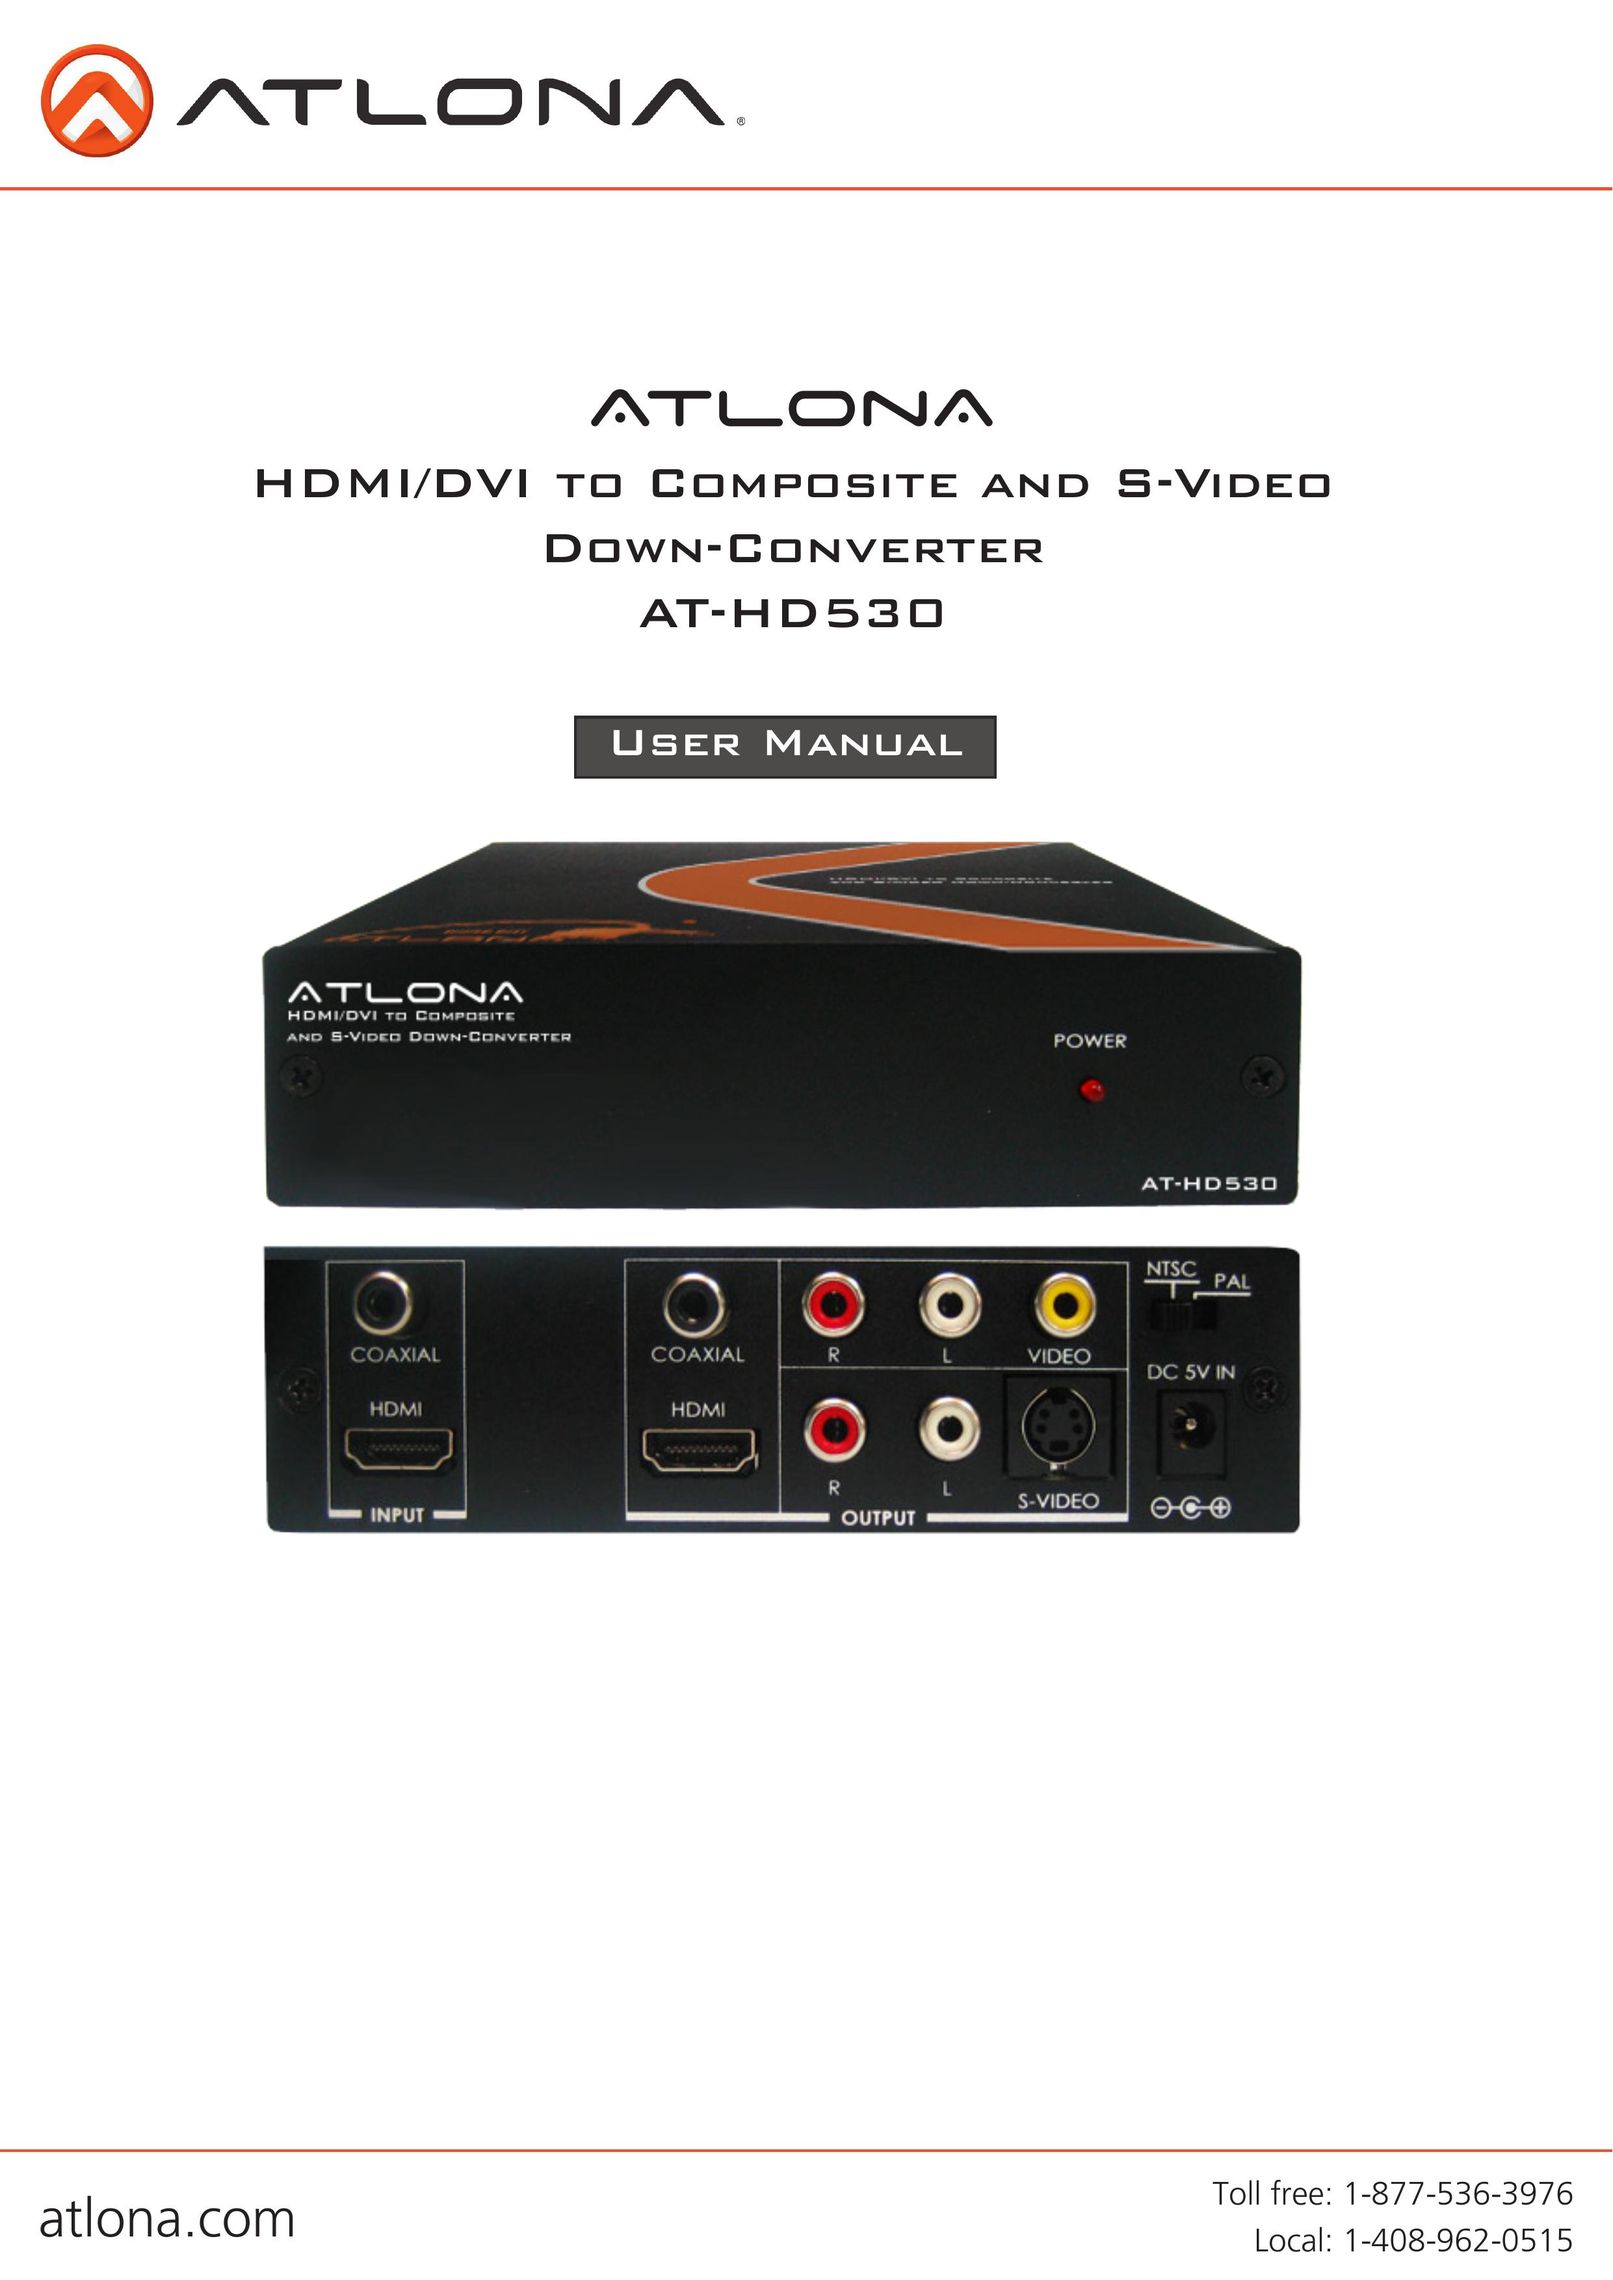 Atlona AT-HD530 TV Converter Box User Manual